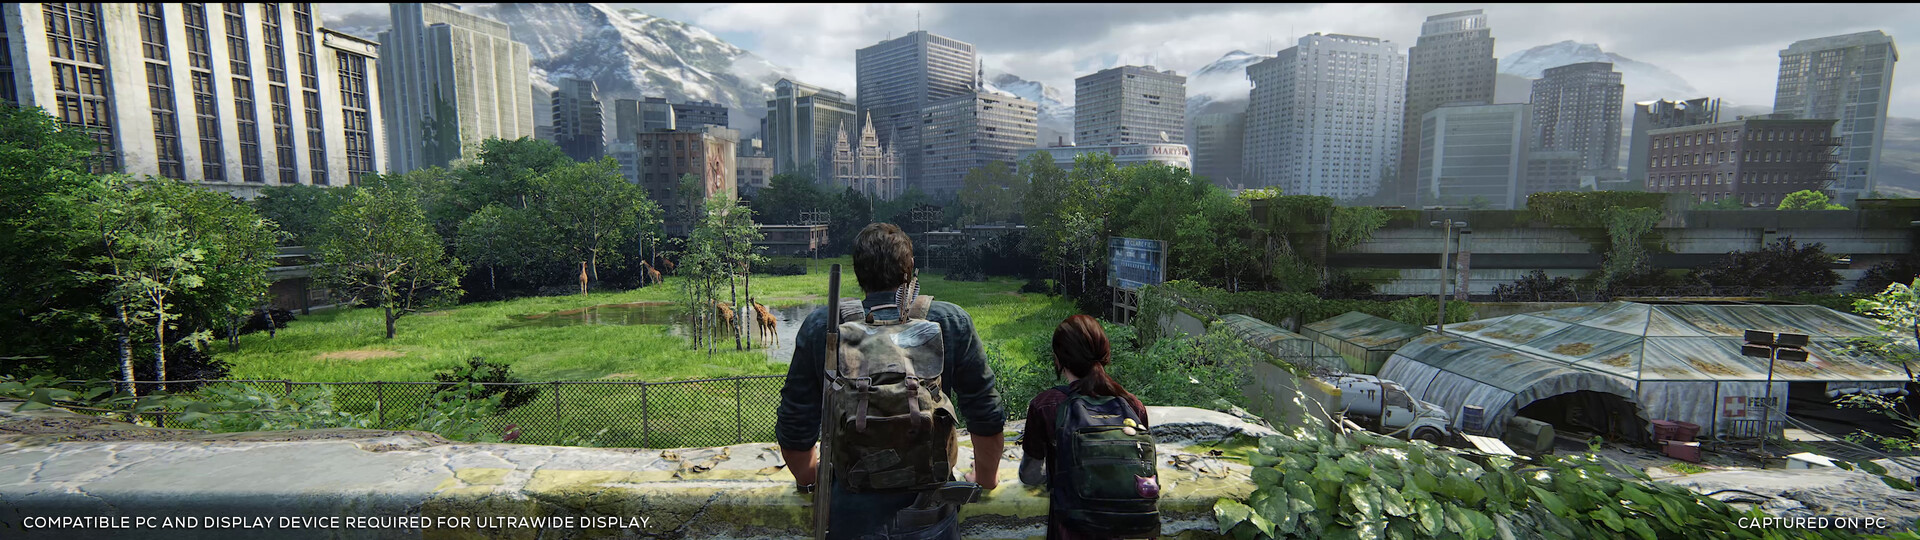 图片[5]_The Last of Us™ Part I 最后生还者™ Part I|数字中文|V1.0.5.0+预购奖励+全DLC+前传 - 白嫖游戏网_白嫖游戏网